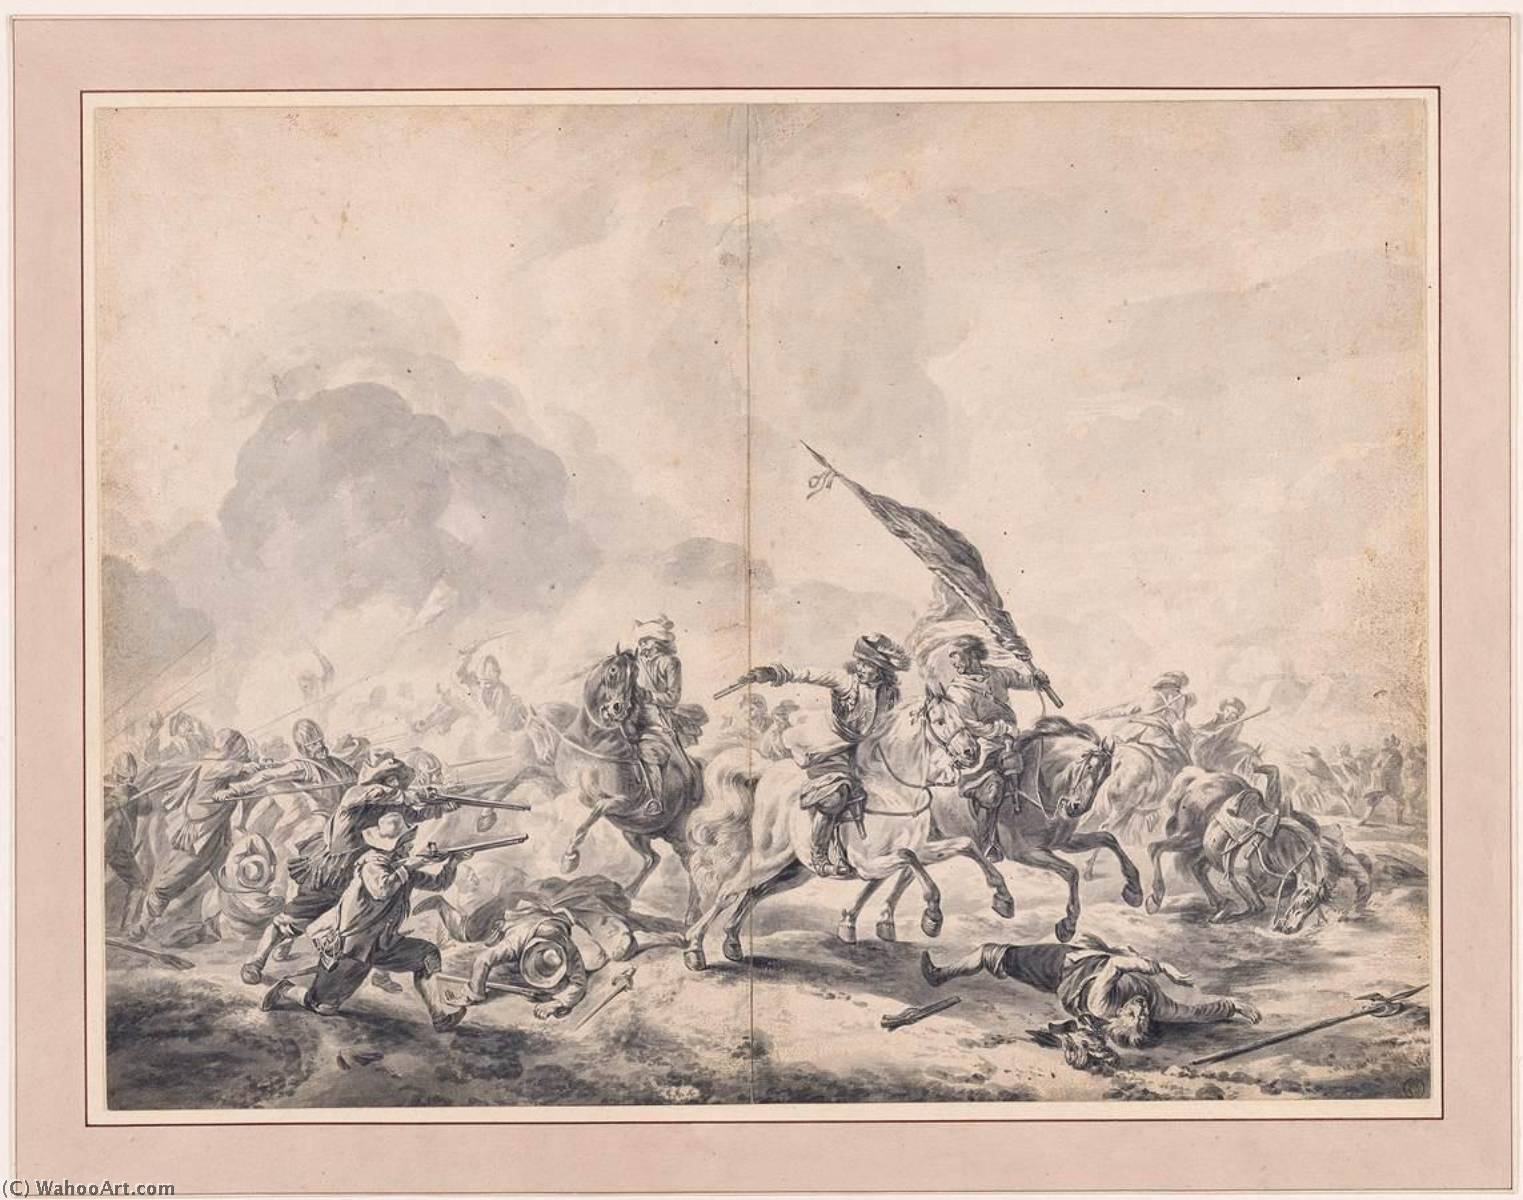 WikiOO.org - Encyclopedia of Fine Arts - Målning, konstverk Jan Van Huchtenburg - Battle between Cavalrymen and Foot Soldiers